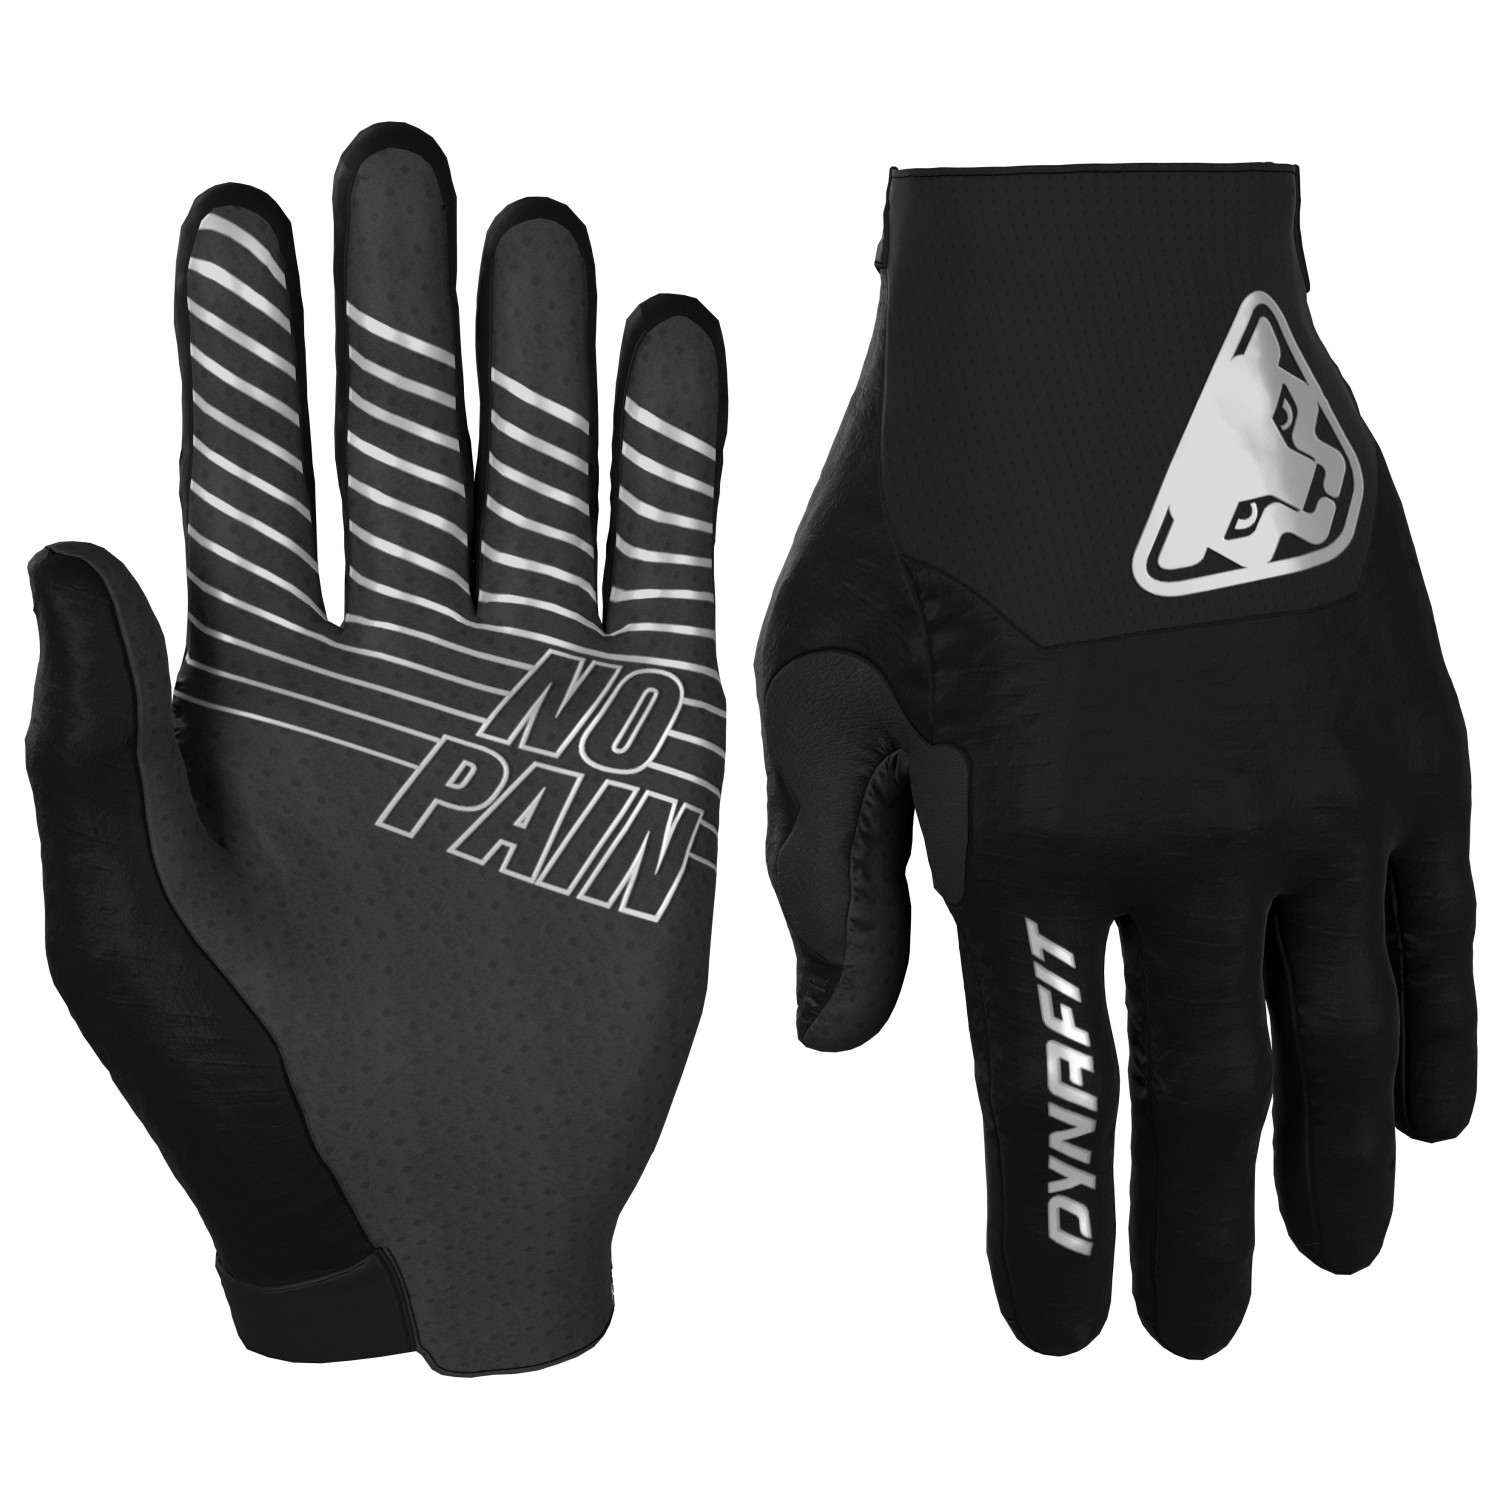 Перчатки Dynafit Ride Gloves, цвет Black Out перчатки игрока дет hgas1 yt ccm tacks prot gloves black white 8